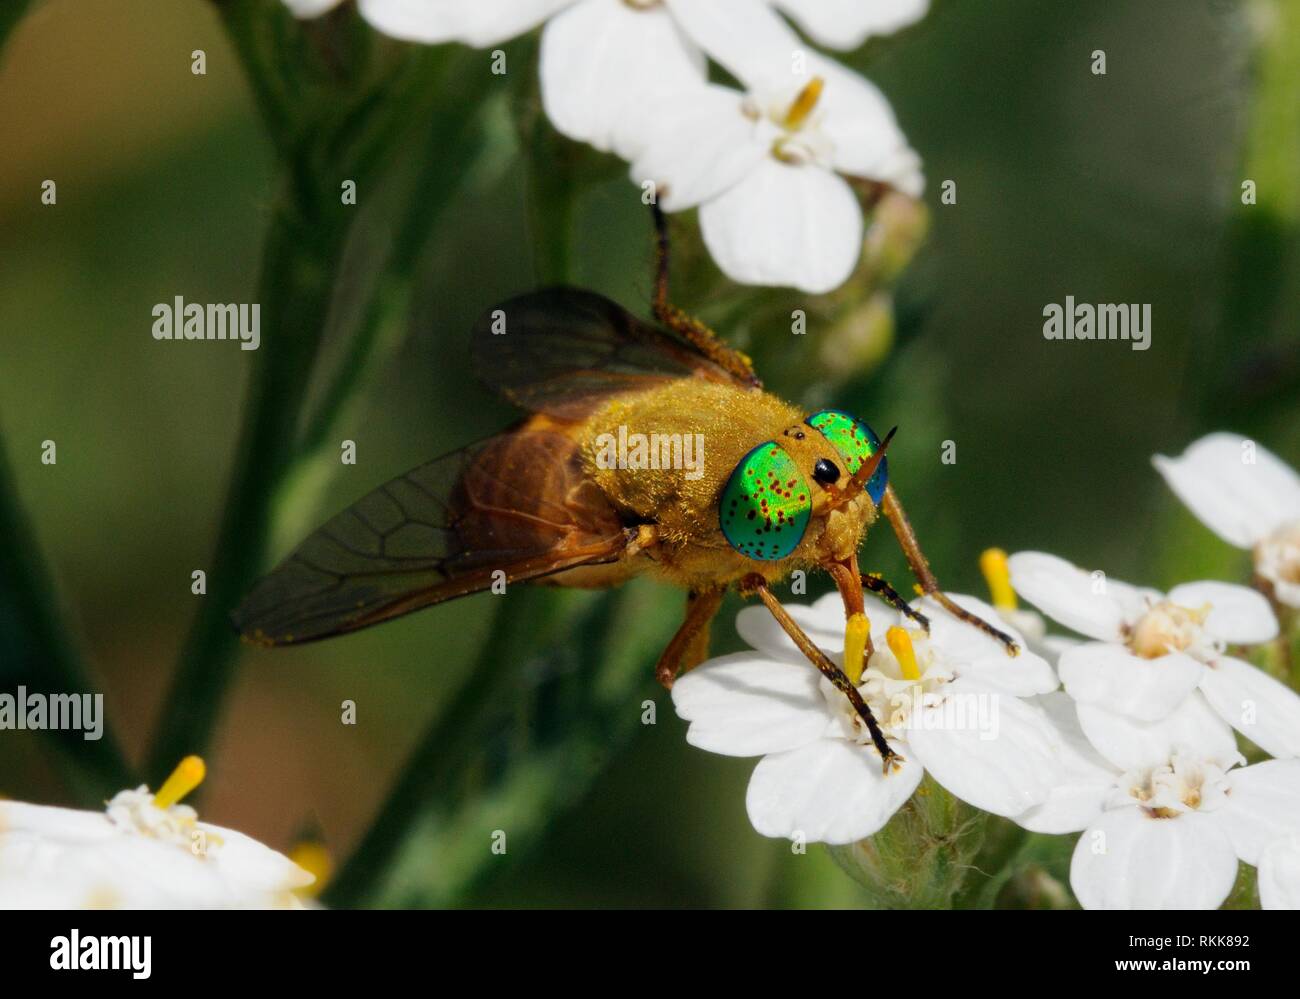 Deer fly (Silvius alpinus) mit grünen Augen Nektar - Beschickung von Blumen. Spanischen Pyrenäen. Stockfoto